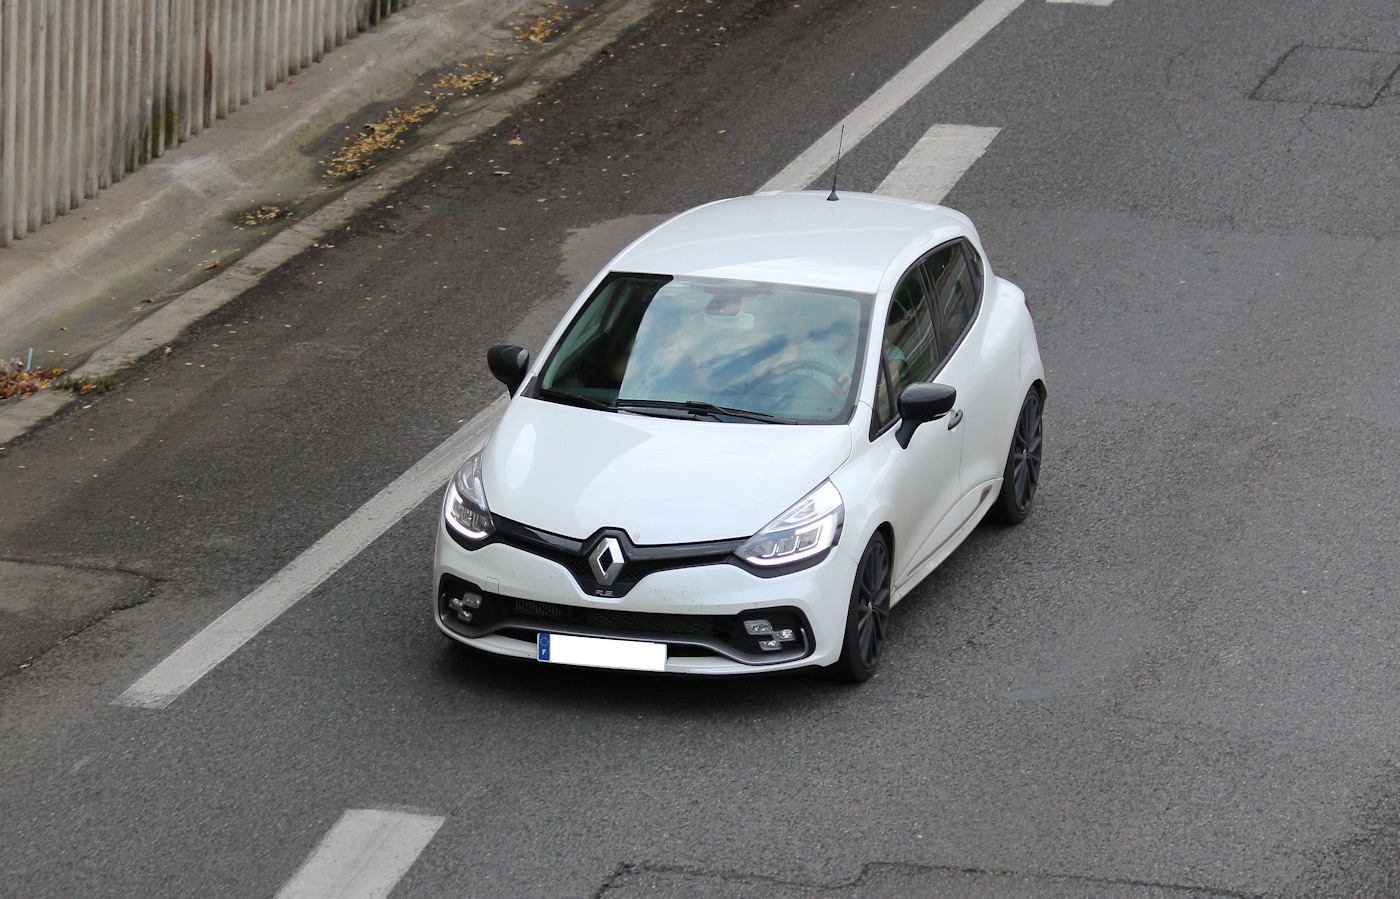 Fiche fiabilité Renault CLIO 4 2012-2019 (+ 684 témoignages)